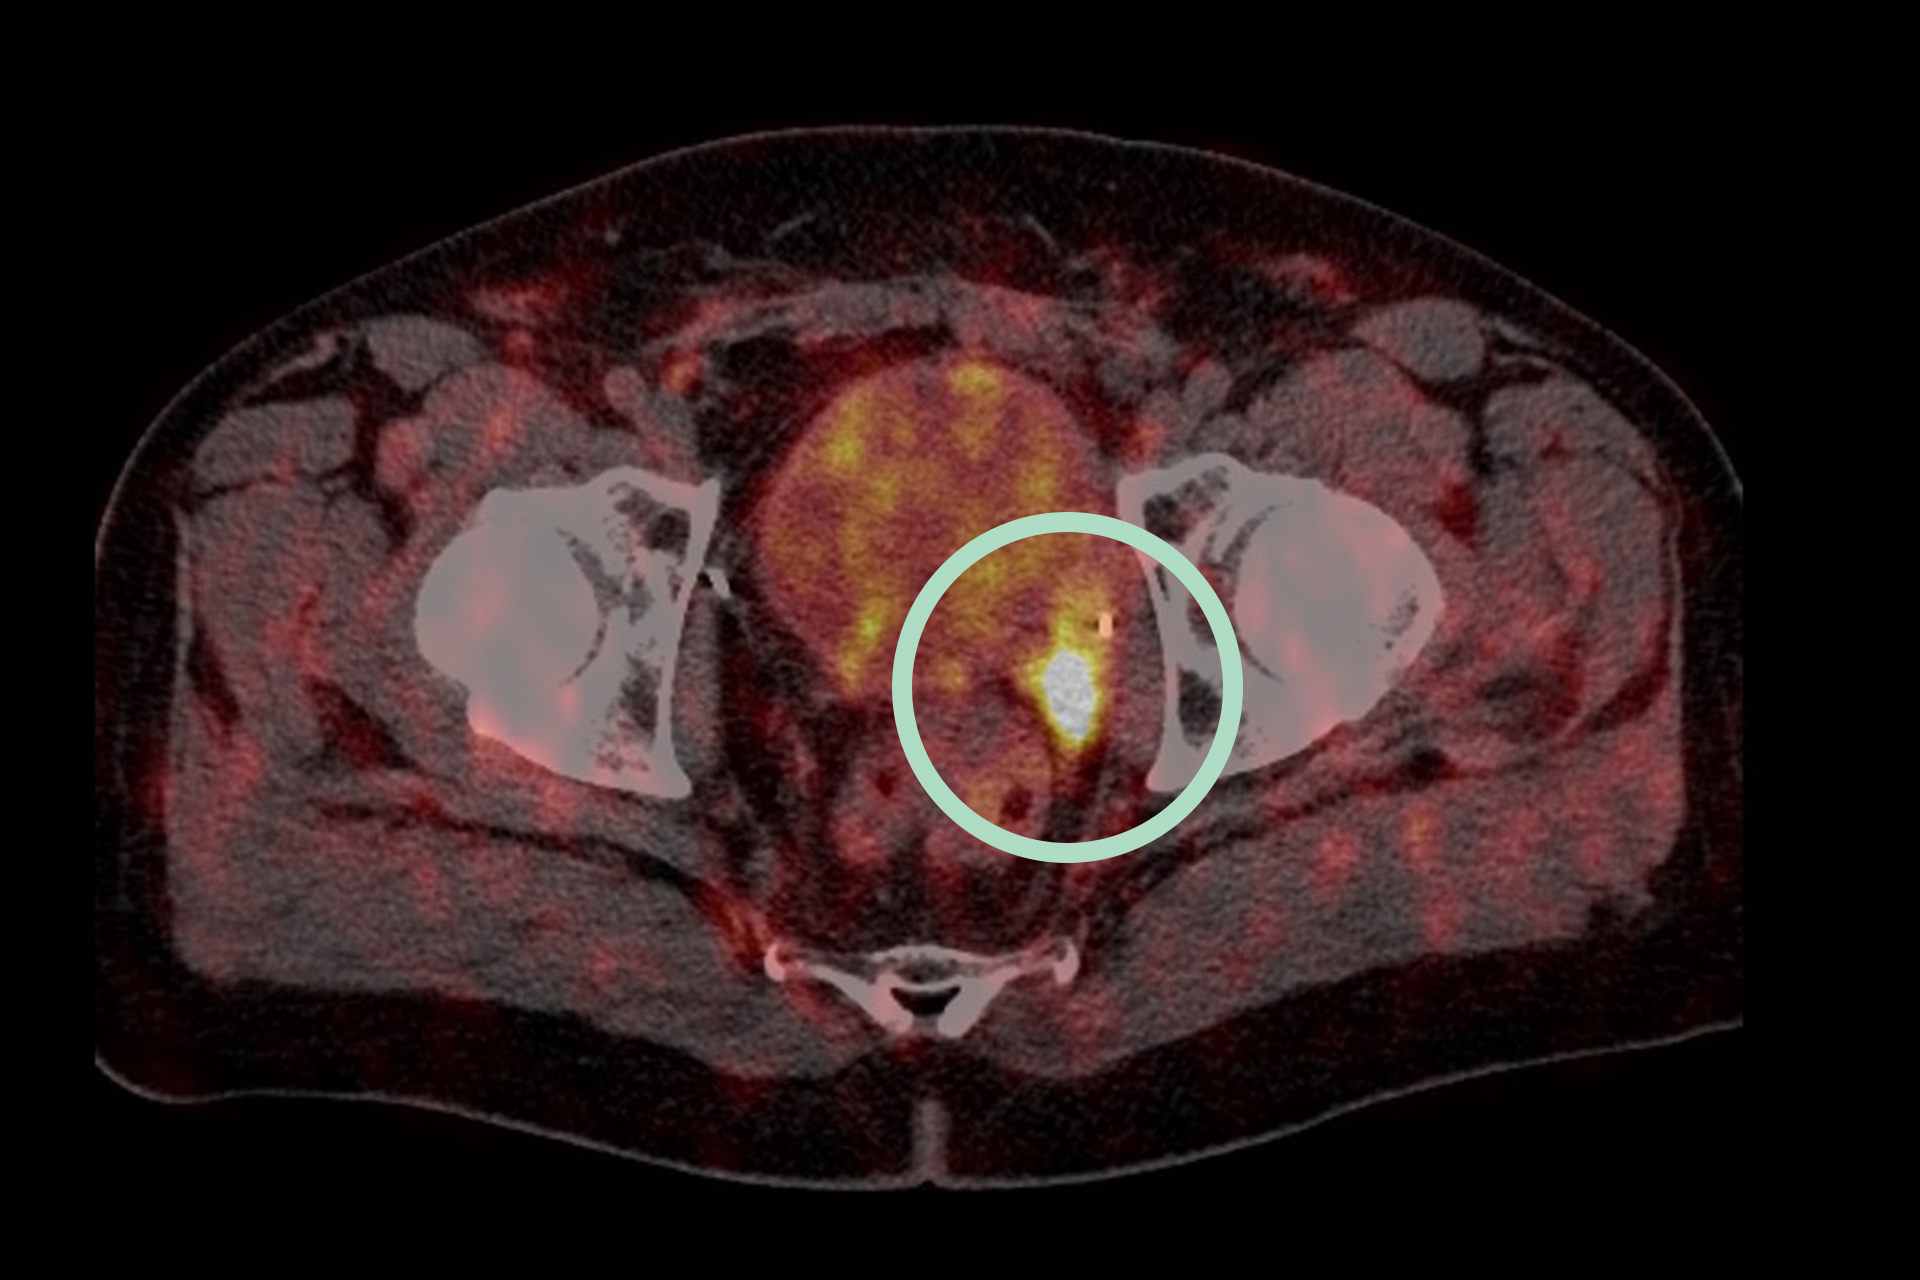 Ultraschalluntersuchungen, Radiologisches Gutachten | Radiologischer Befundbericht | Praxis für Radiologie & Nuklearmedizin